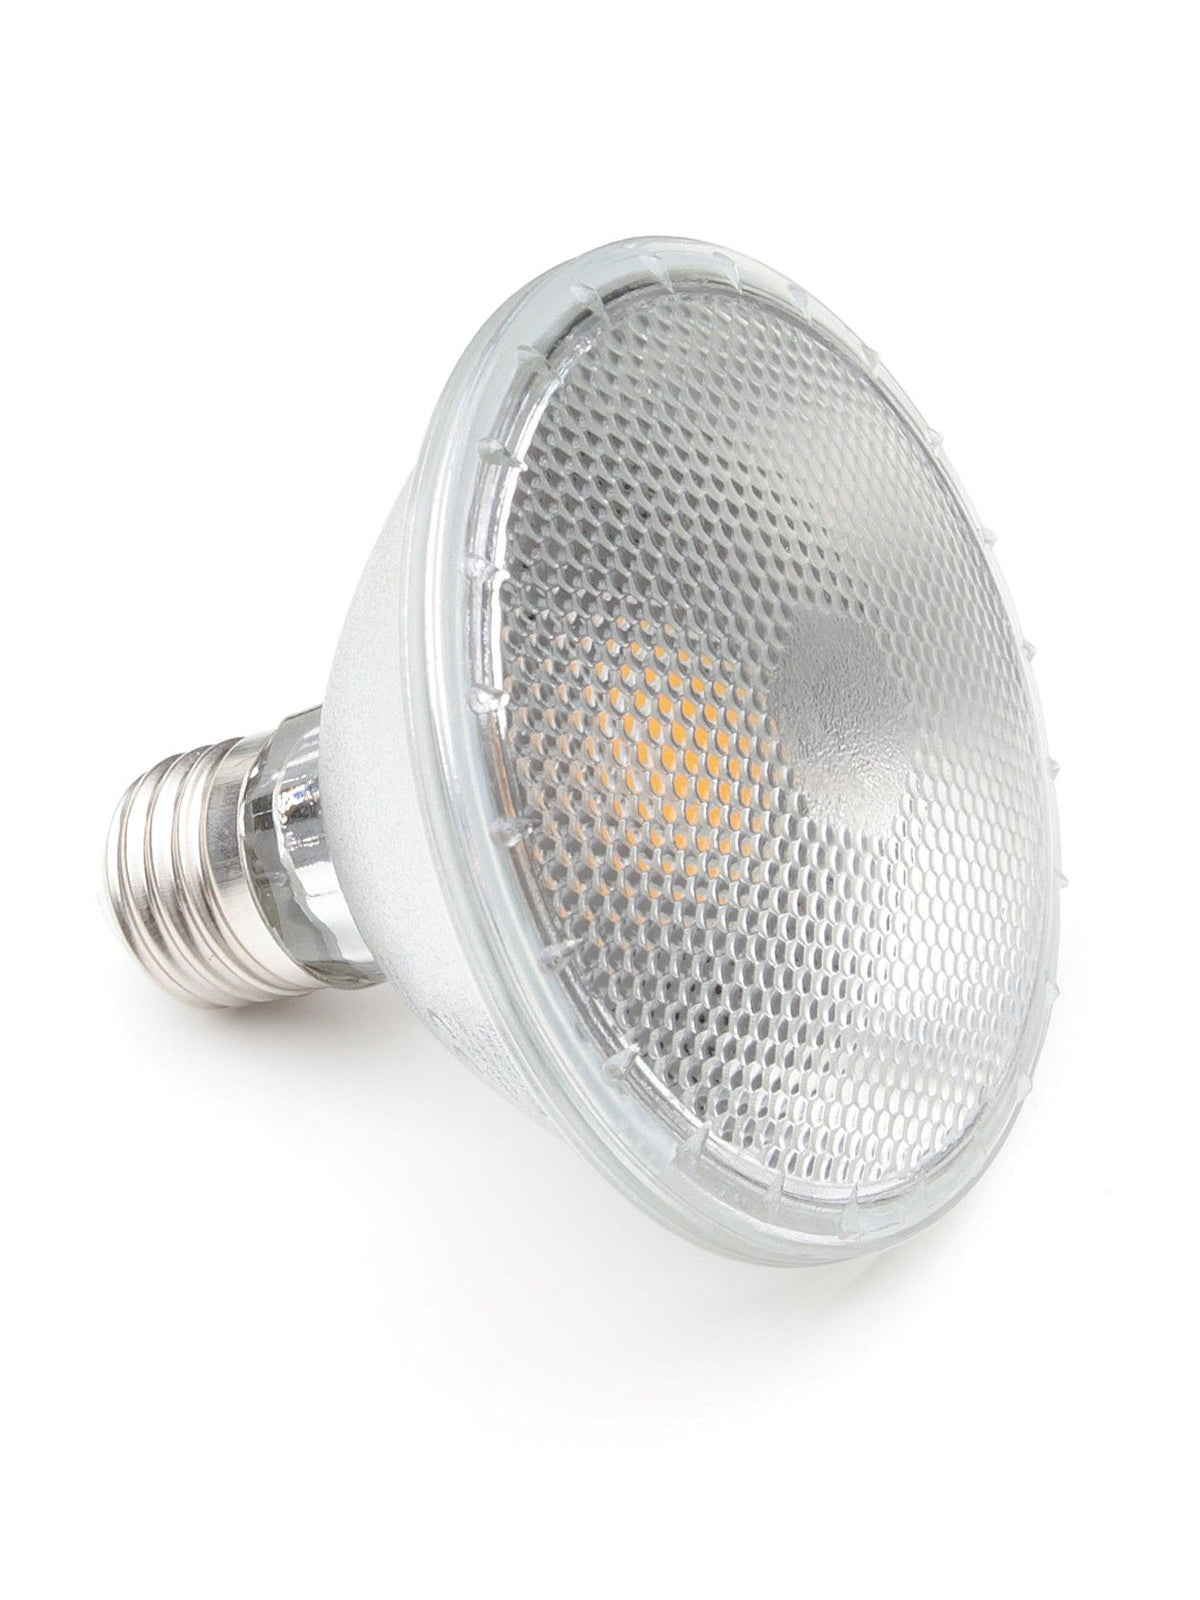 LED reflector bulb PAR 30S by Ingo Maurer